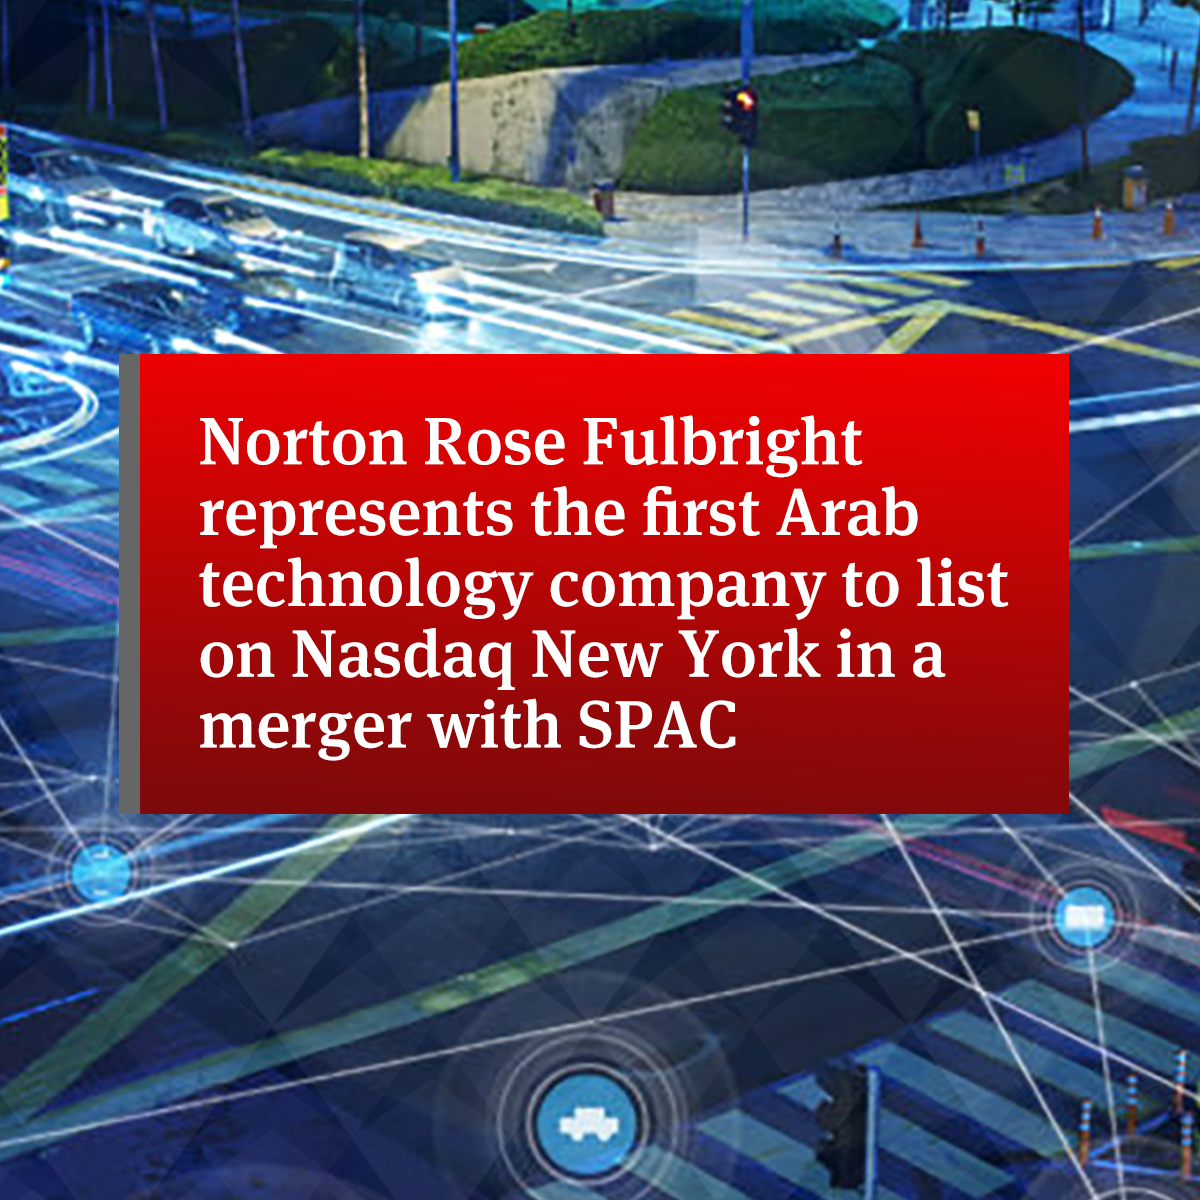 نورتون روز فولبرايت تمثل أول شركة تكنولوجيا عربية يتم إدراجها في بورصة ناسداك في نيويورك بالاندماج مع SPAC |  الولايات المتحدة |  شركة محاماة عالمية